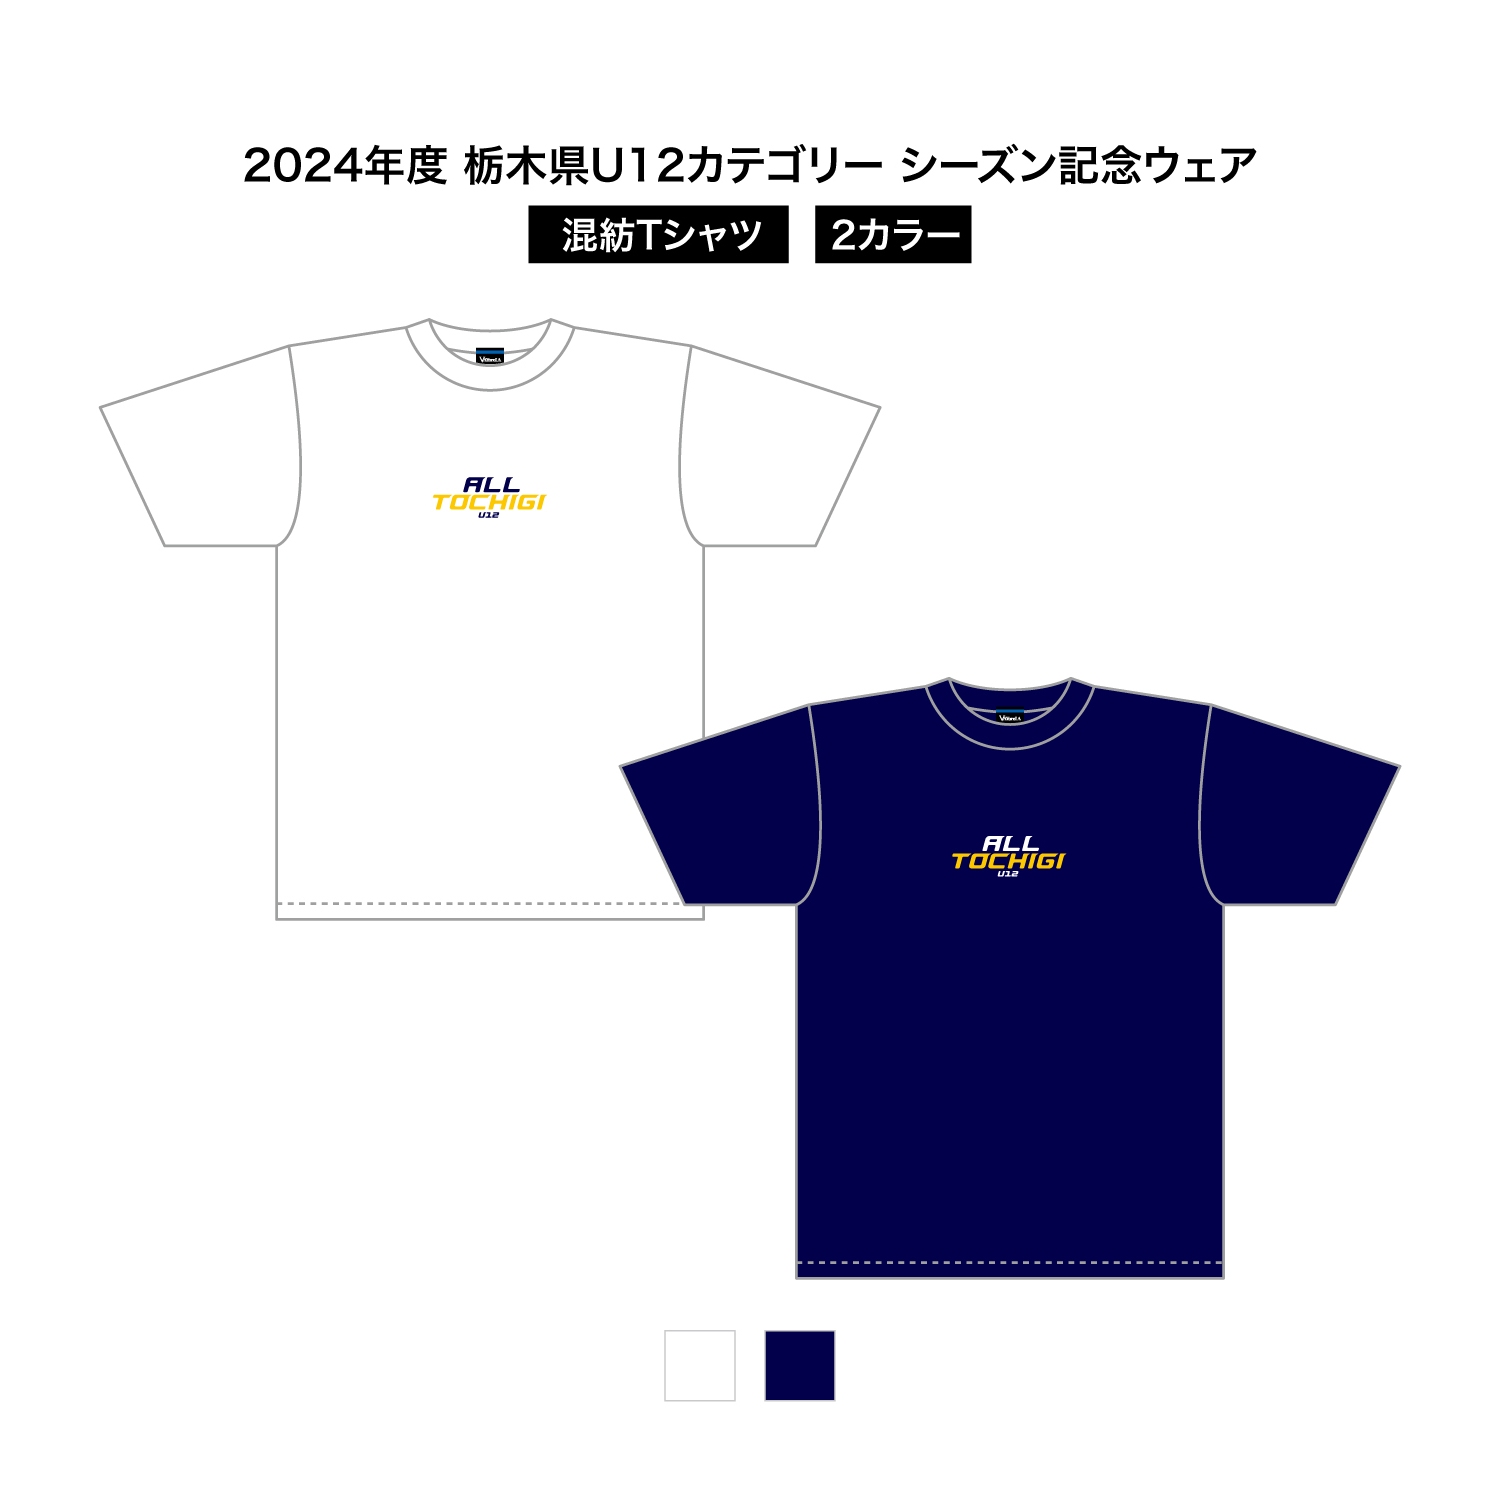 2024 栃木県U12 シーズン記念ウェア 混紡Tシャツ